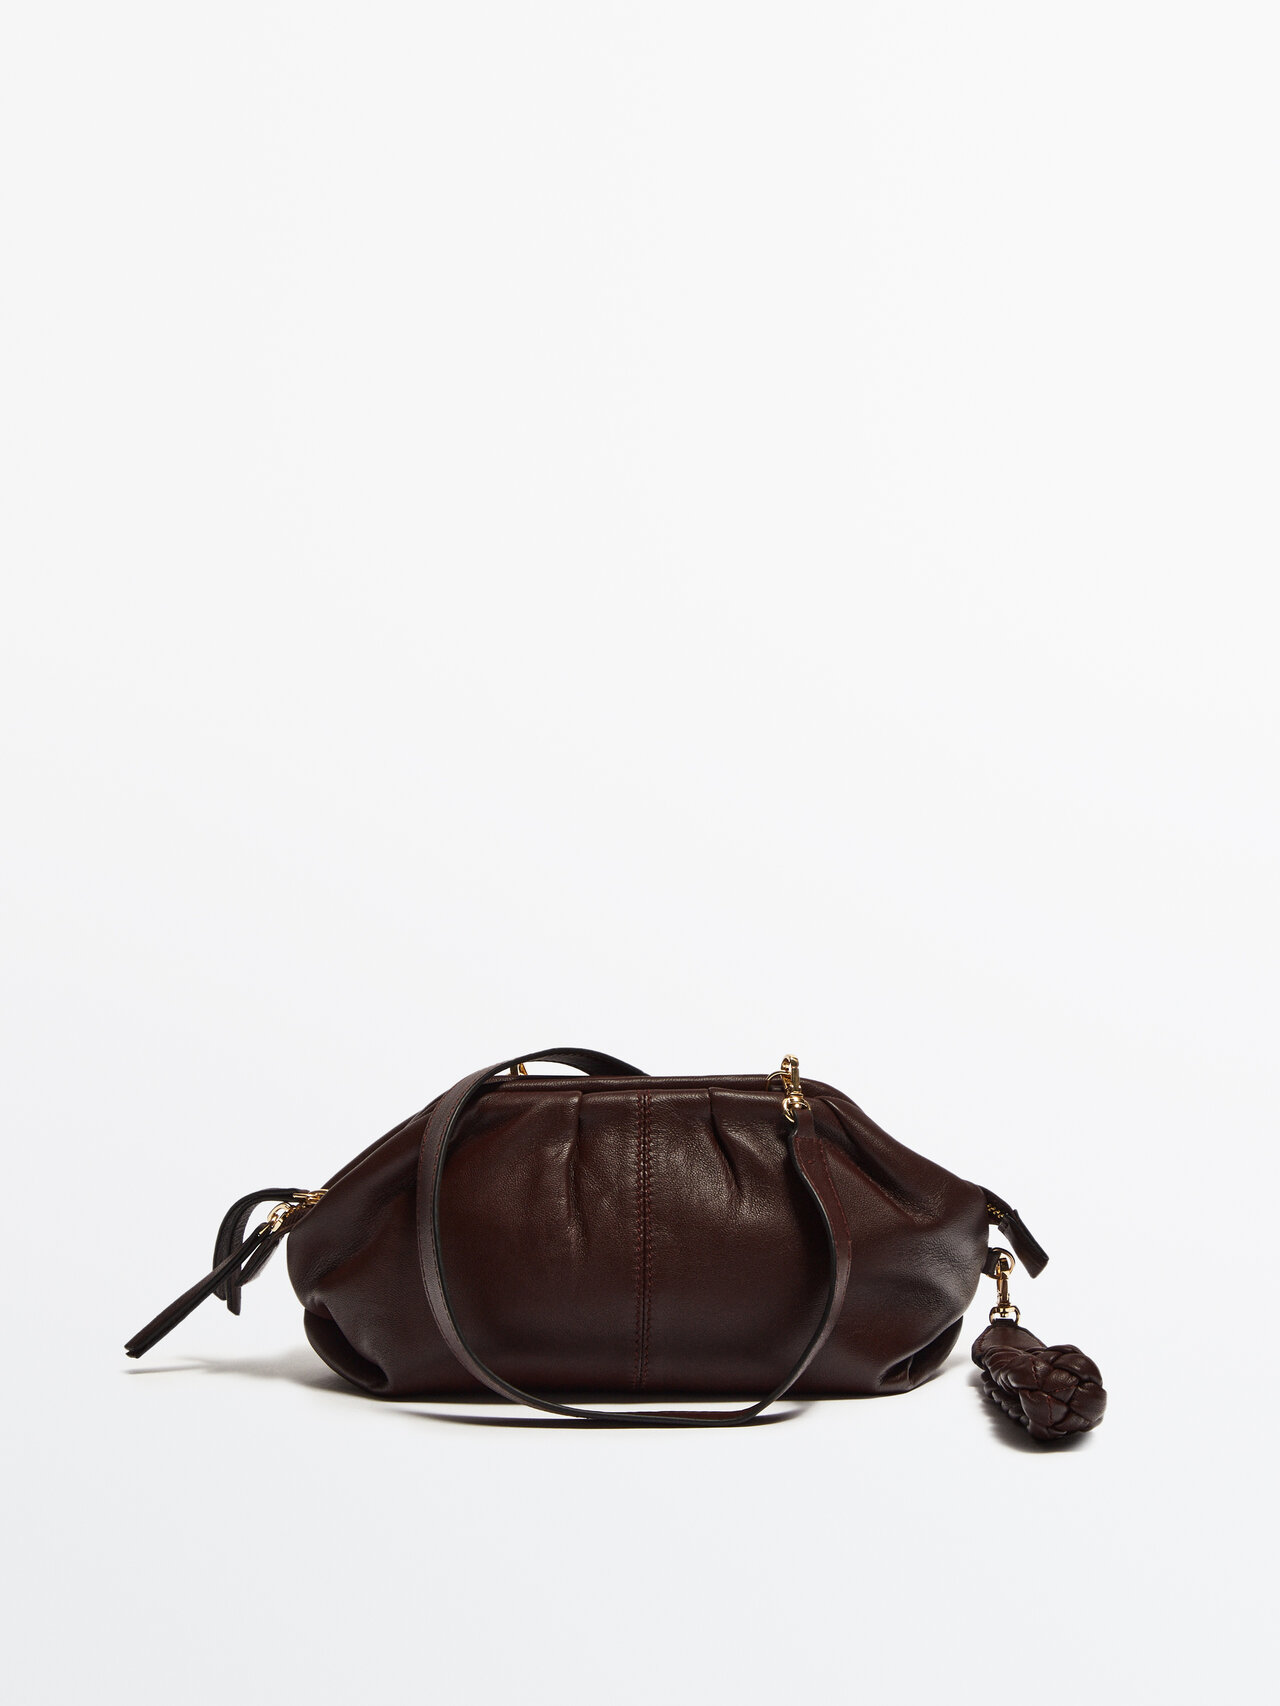 Massimo Dutti Gathered Mini Leather Bag - Studio In Brown